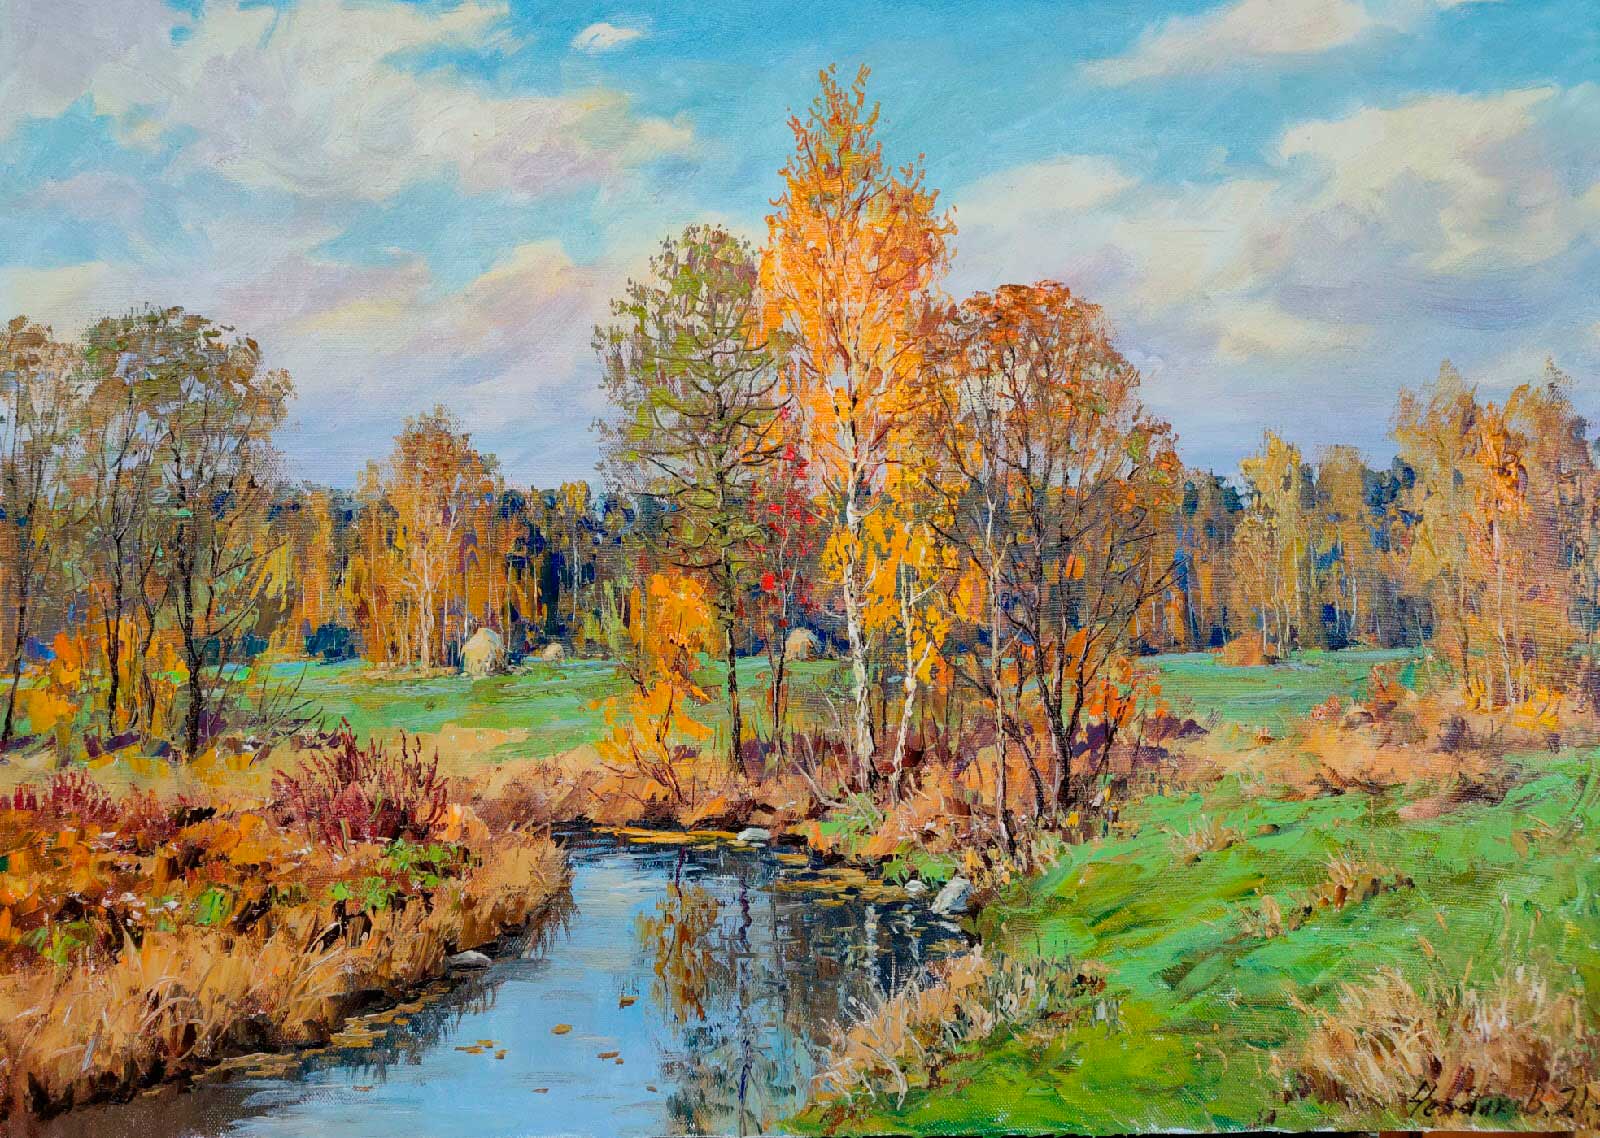 Autumn Day - 1, Vyacheslav Cherdakov, Buy the painting Oil